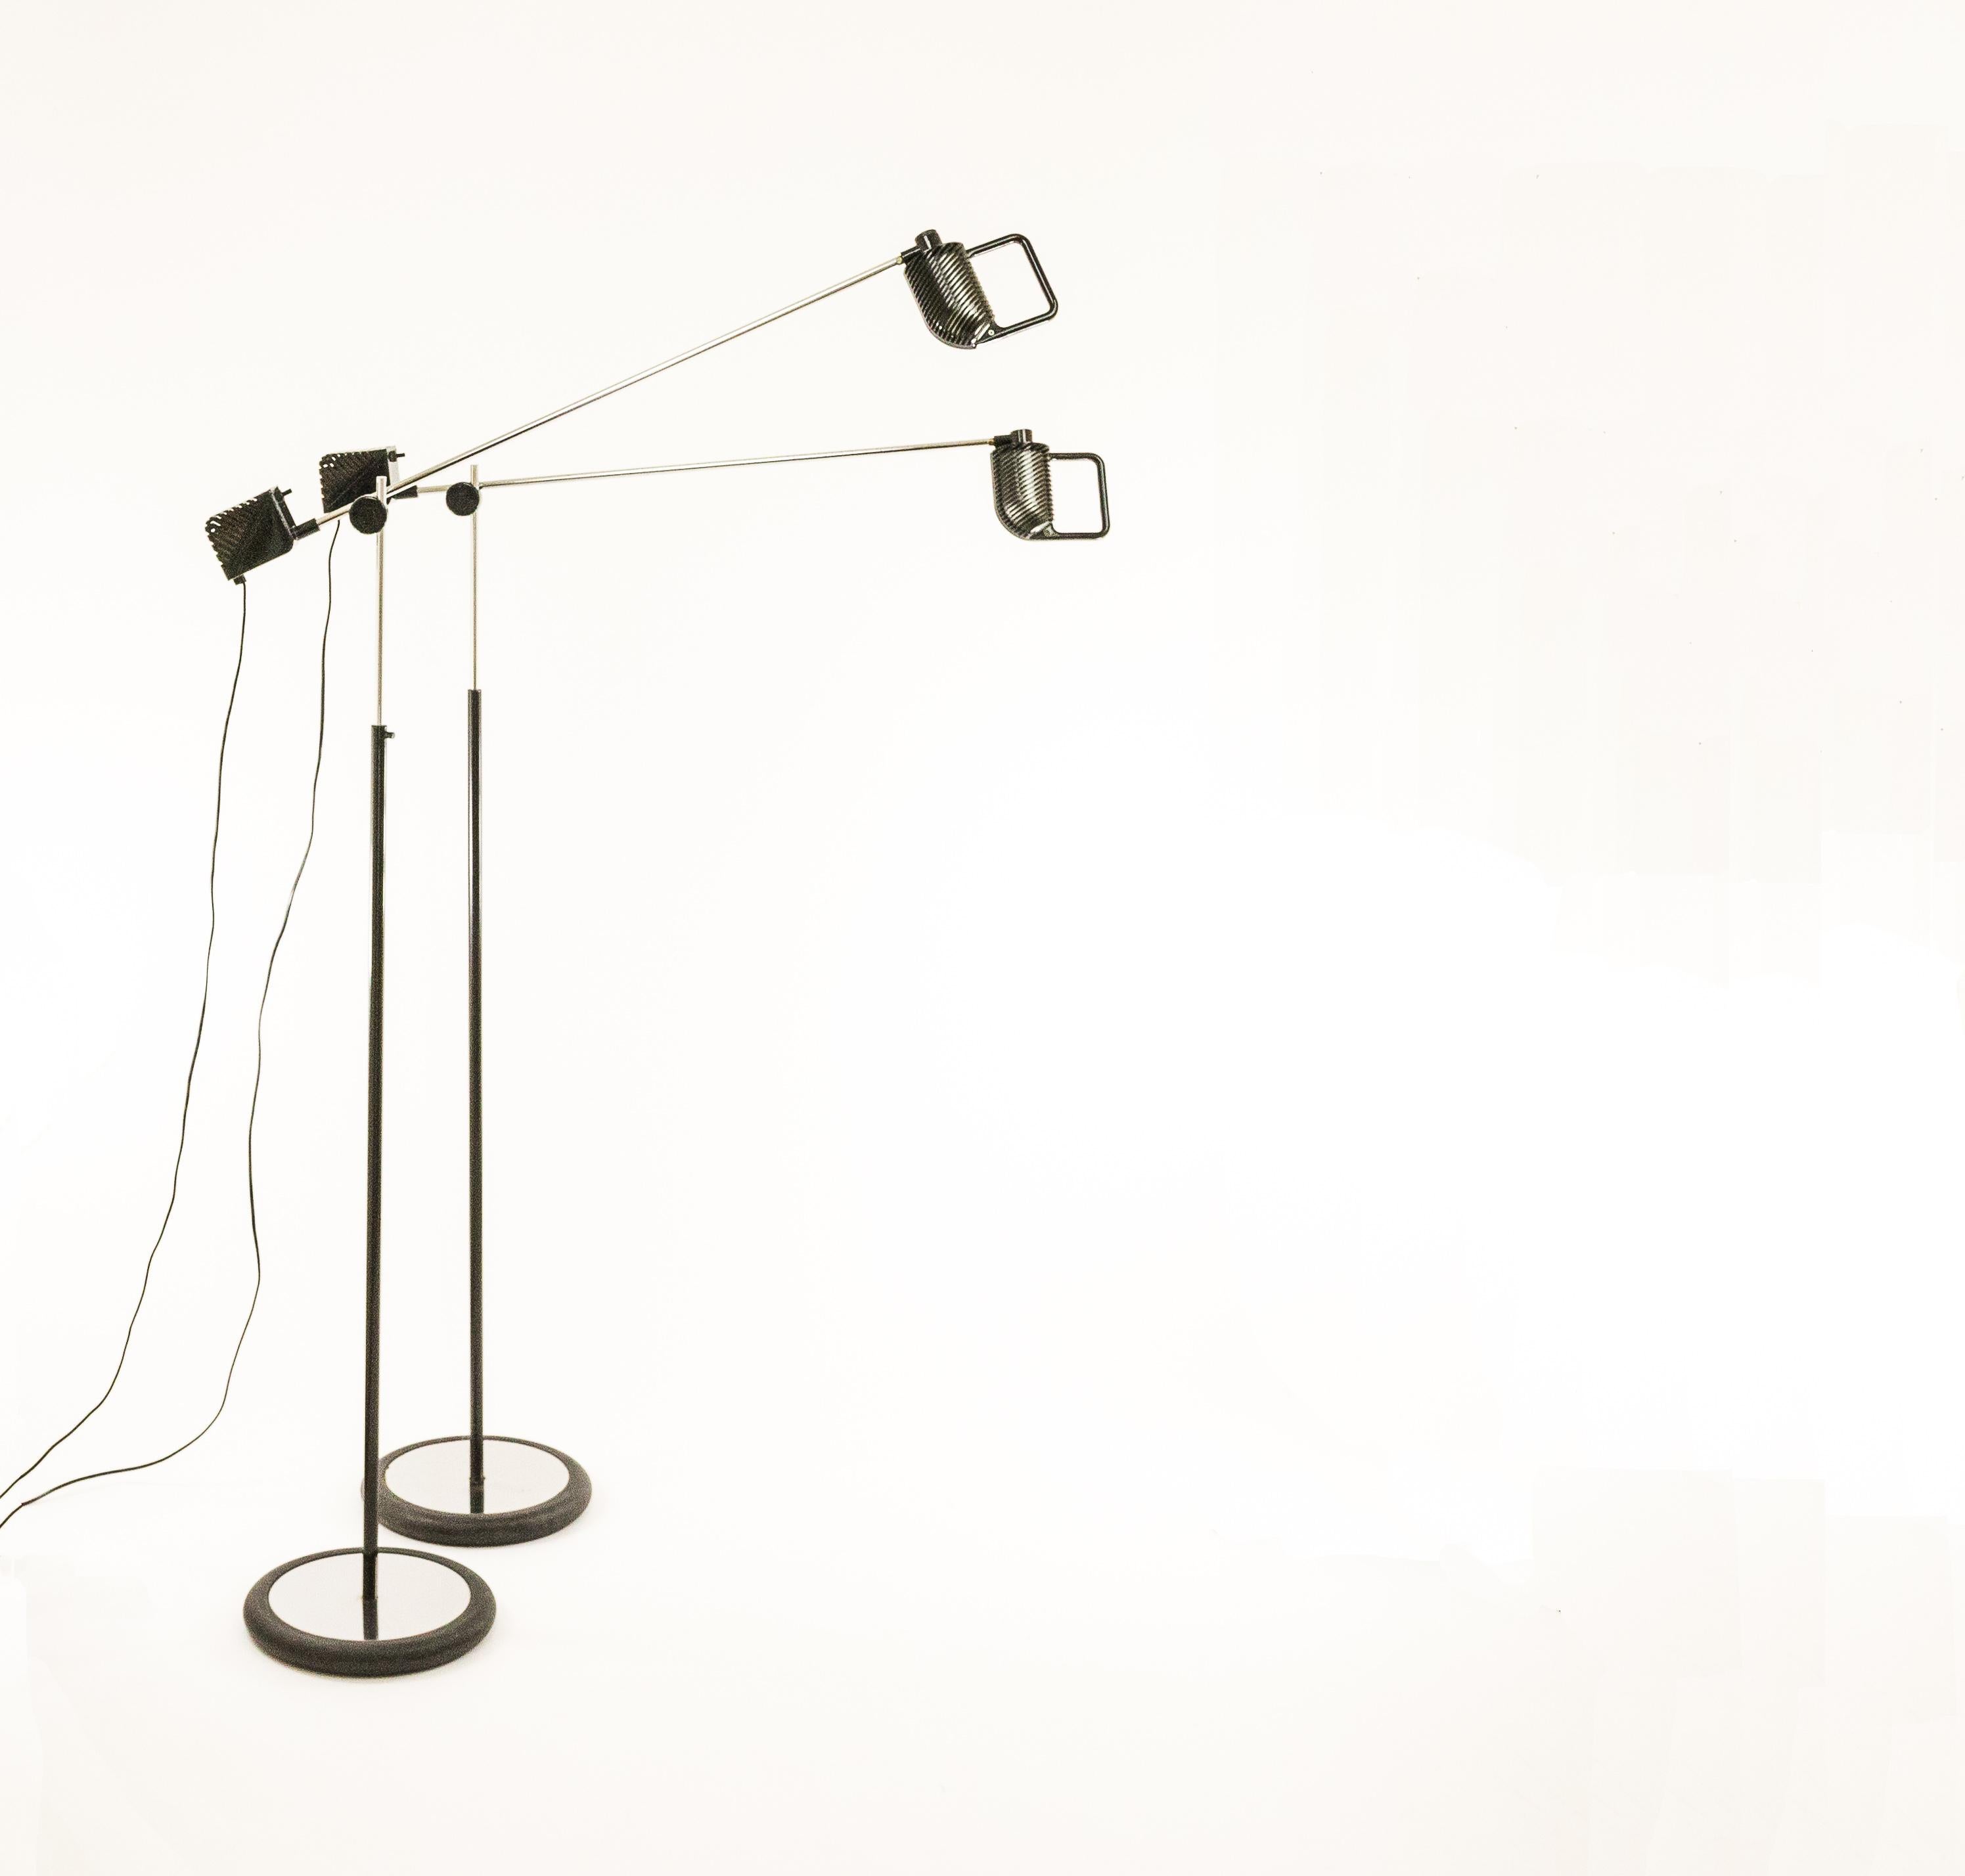 Paire de lampadaires Maniglia conçus par Jonathan de Pas, Donato D'Urbino et Paolo Lomazzi pour le fabricant de luminaires italien Stilnovo.

Nous avons trouvé la description suivante dans une publicité Stilnovo de 1975 - traduite de l'italien - :